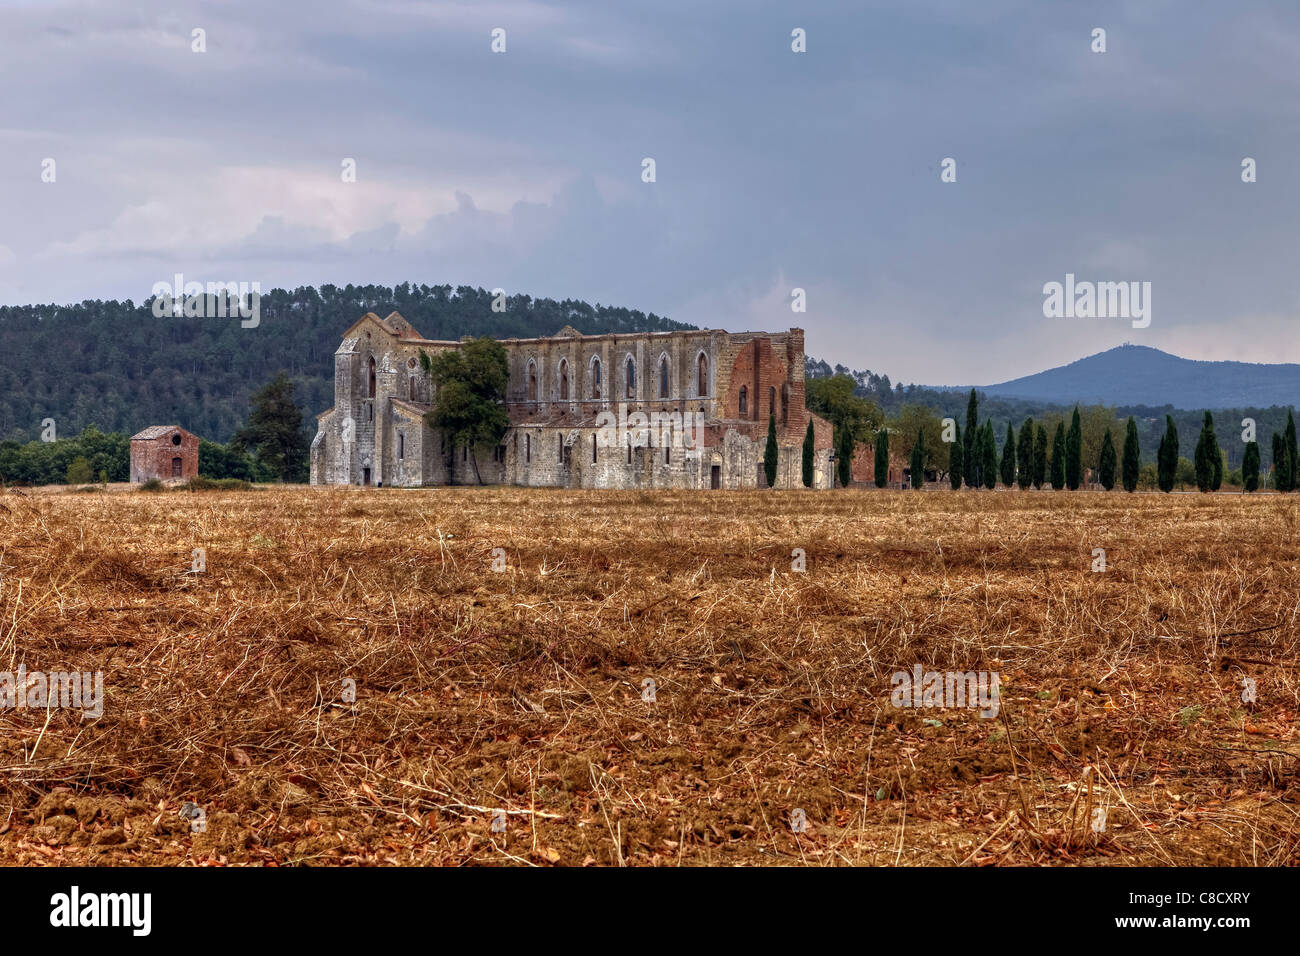 The Cistercian Abbey of San Galgano in Tuscany Stock Photo